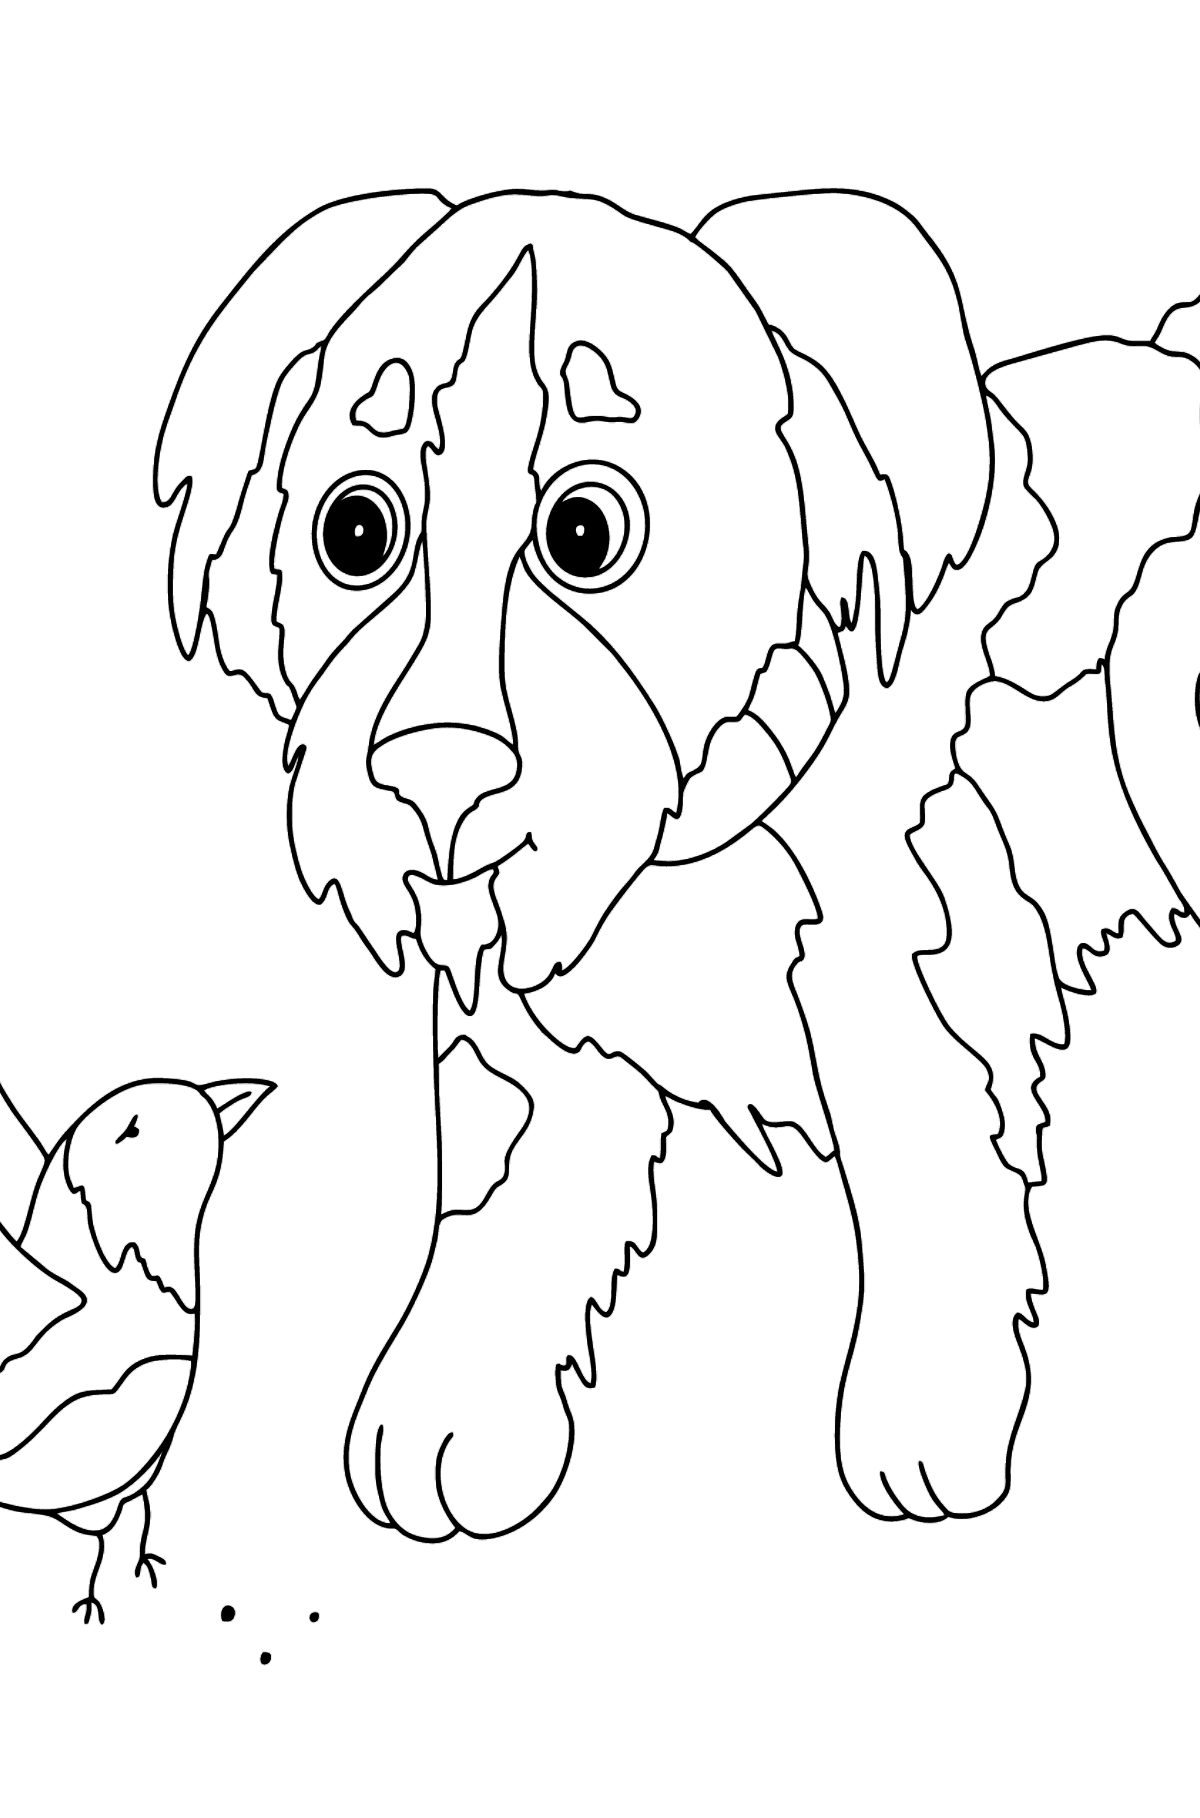 Dibujo para Colorear - Un Perro está Jugando con un Ave - Dibujos para Colorear para Niños